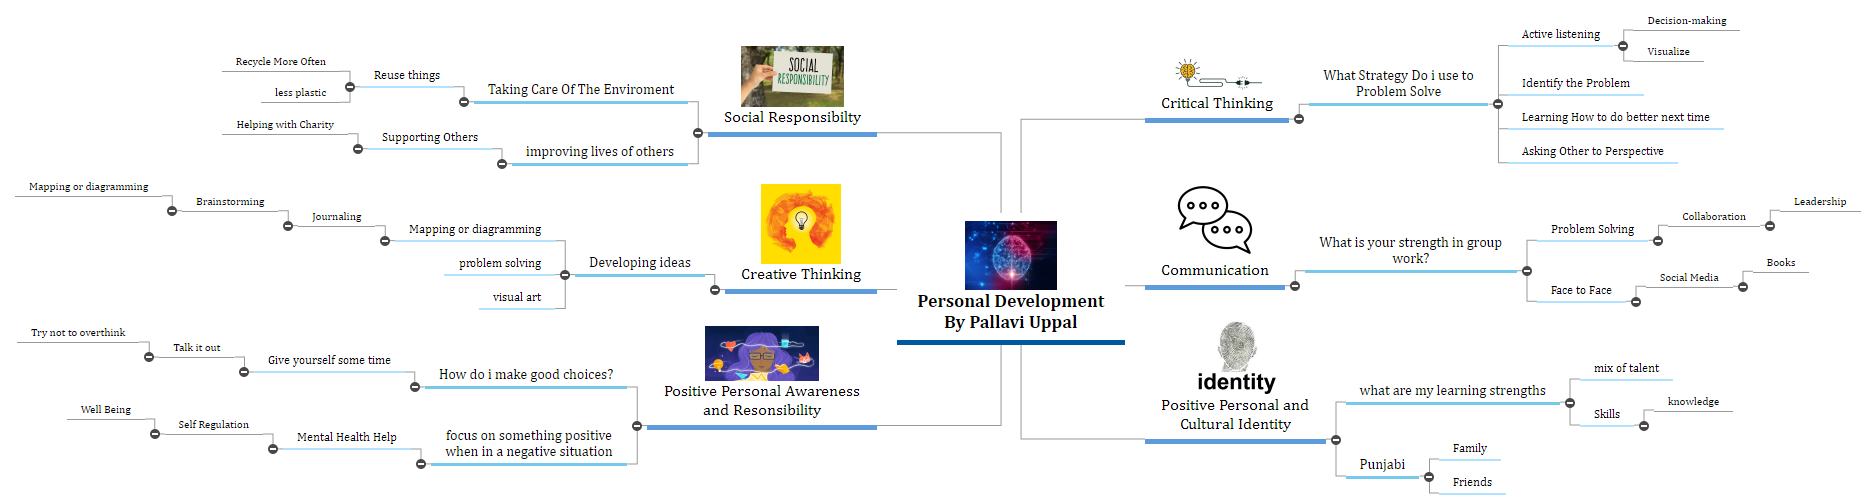 Personal Development By Pallavi Uppal Mind Map